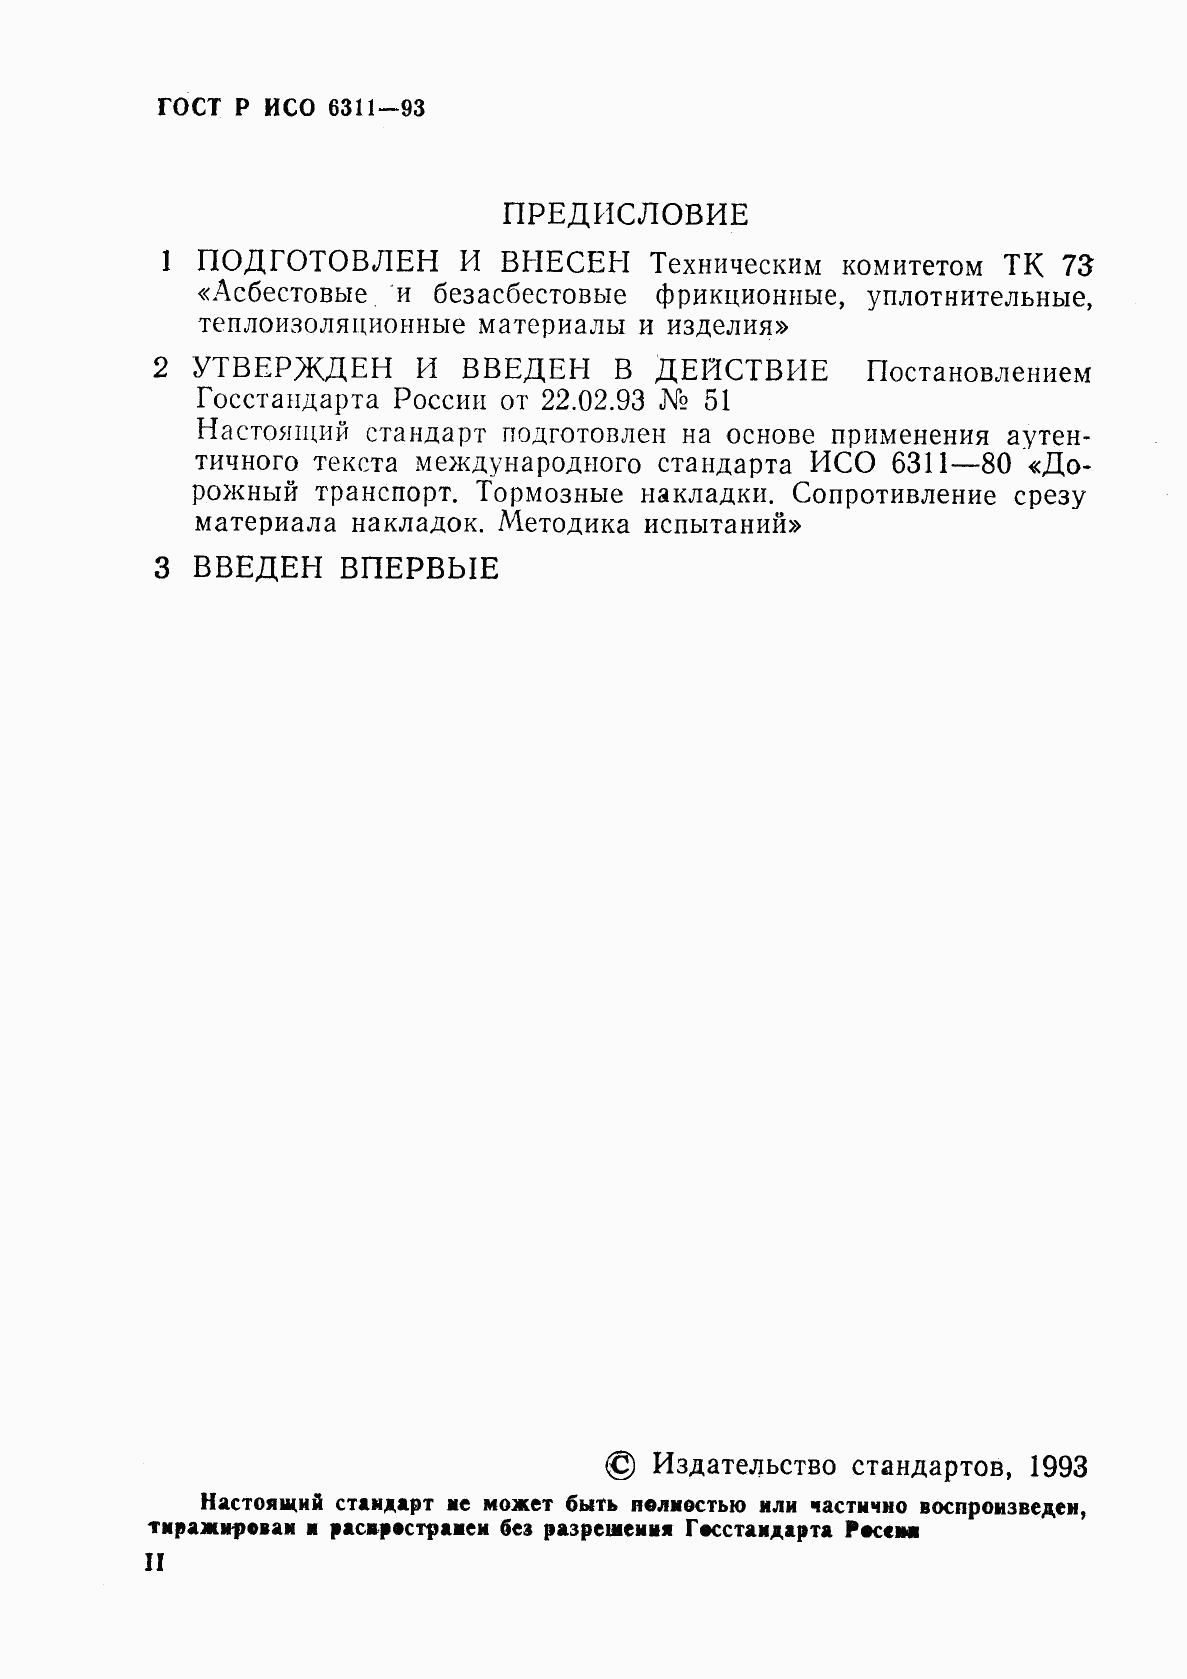 ГОСТ Р ИСО 6311-93, страница 2